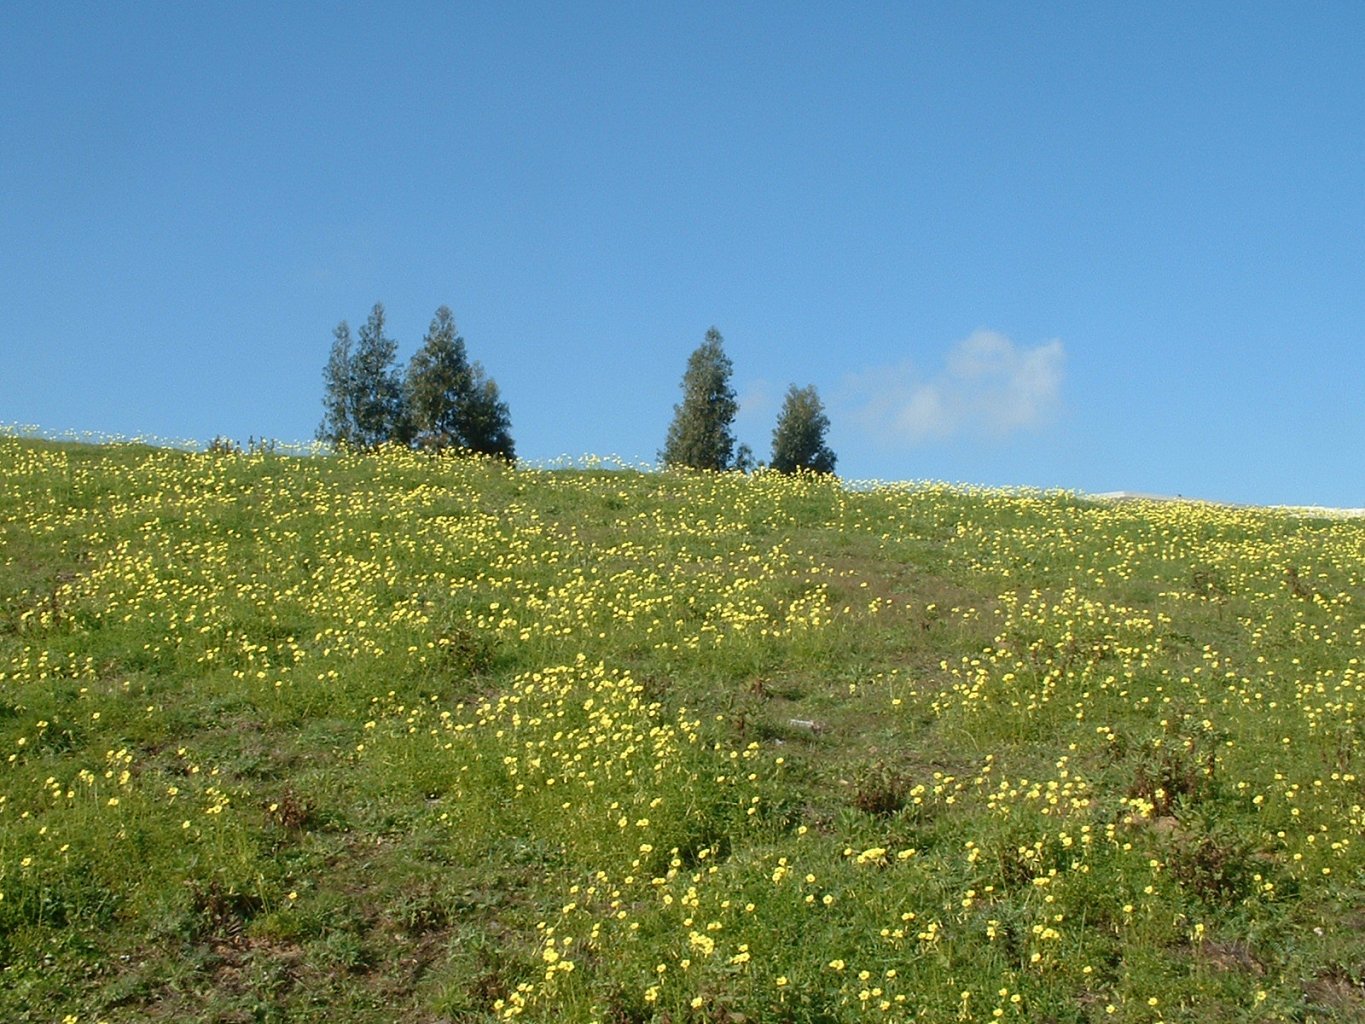 Oxalis fields, em março